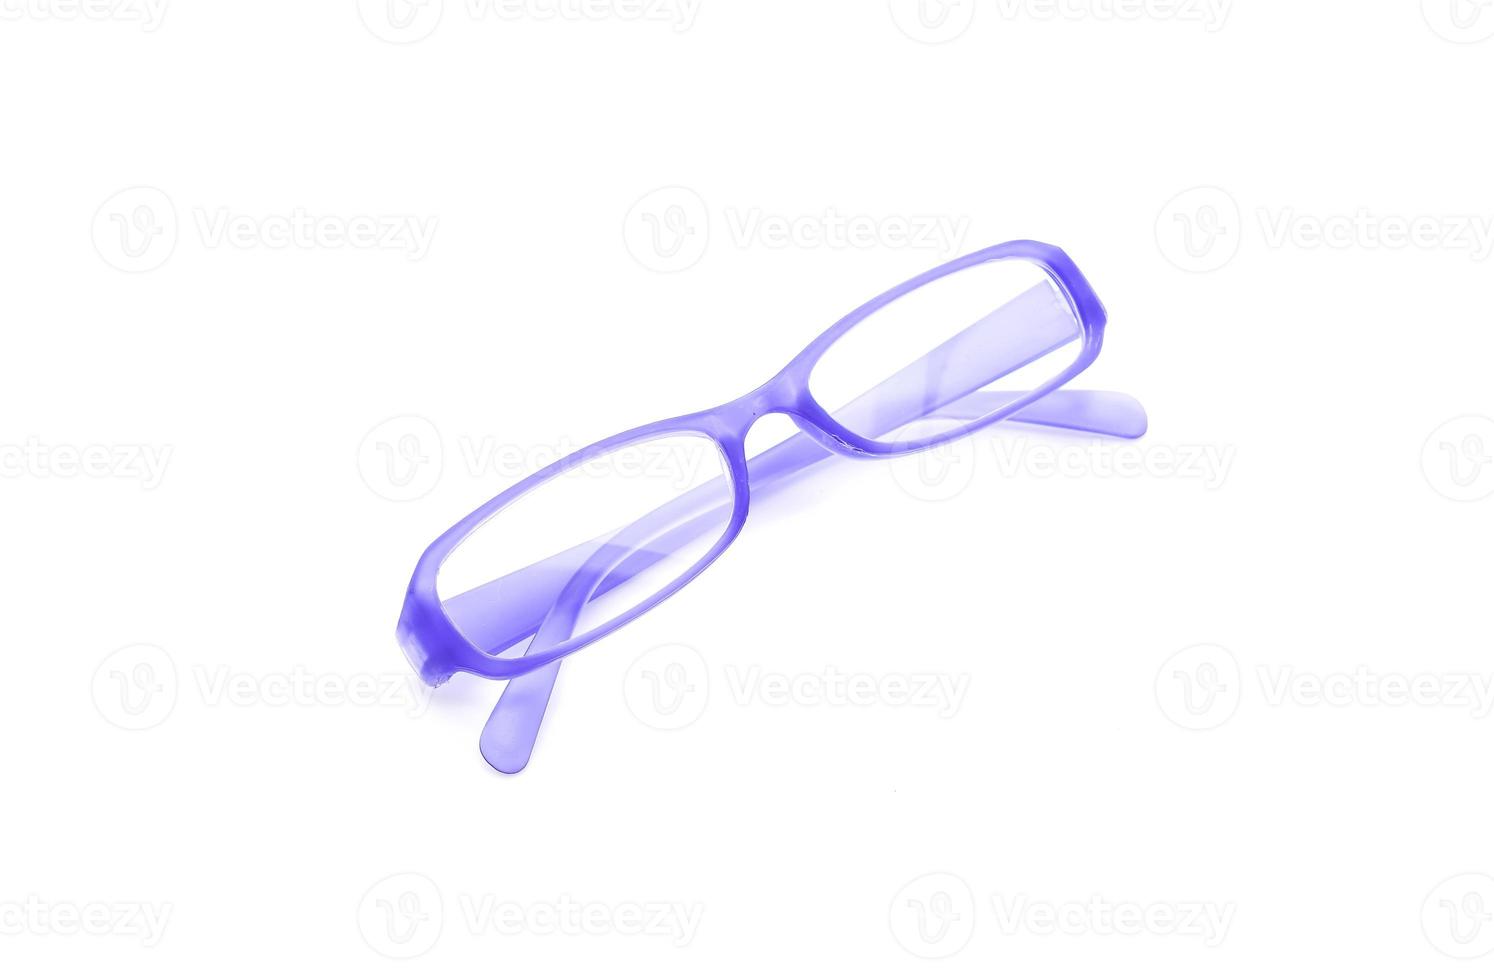 occhiali da vista, occhiali o occhiali su sfondo bianco foto